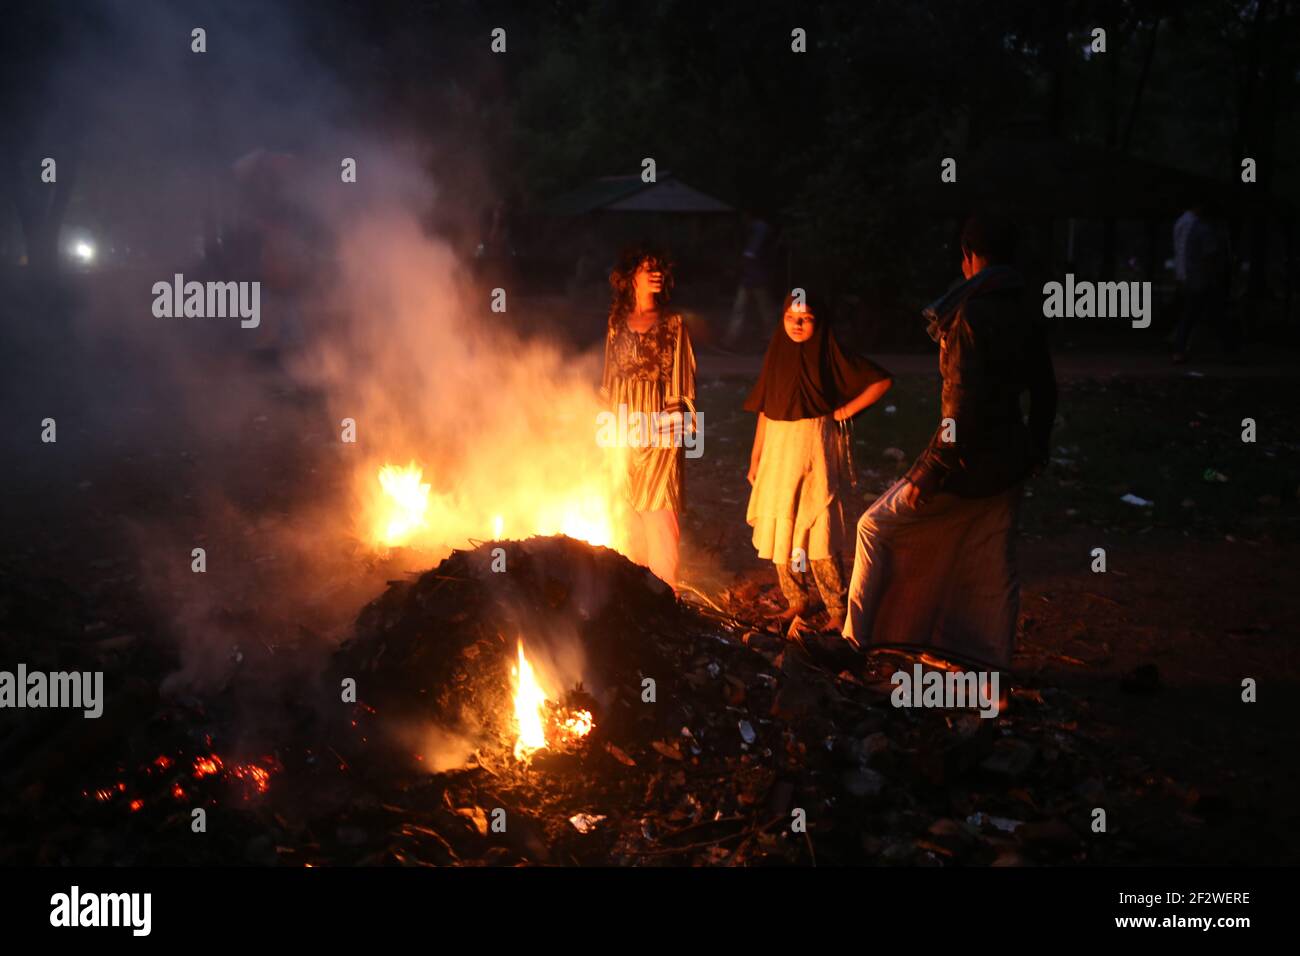 Dhaka, Bangladesch. März 2021, 13th. Getrocknete Blätter werden verbrannt, um den Park am Suhrawardi Uddan zu räumen.die Amar Ekushey Buchmesse 2021 beginnt in wenigen Tagen.in diesem Jahr beginnt die Buchmesse wegen des neuartigen Coronavirus spät.das Brennen von Blättern führt zu Luftverschmutzung, Gesundheitsproblemen und Brandgefahren. Kredit: MD. Rakibul Hasan/ZUMA Wire/Alamy Live Nachrichten Stockfoto